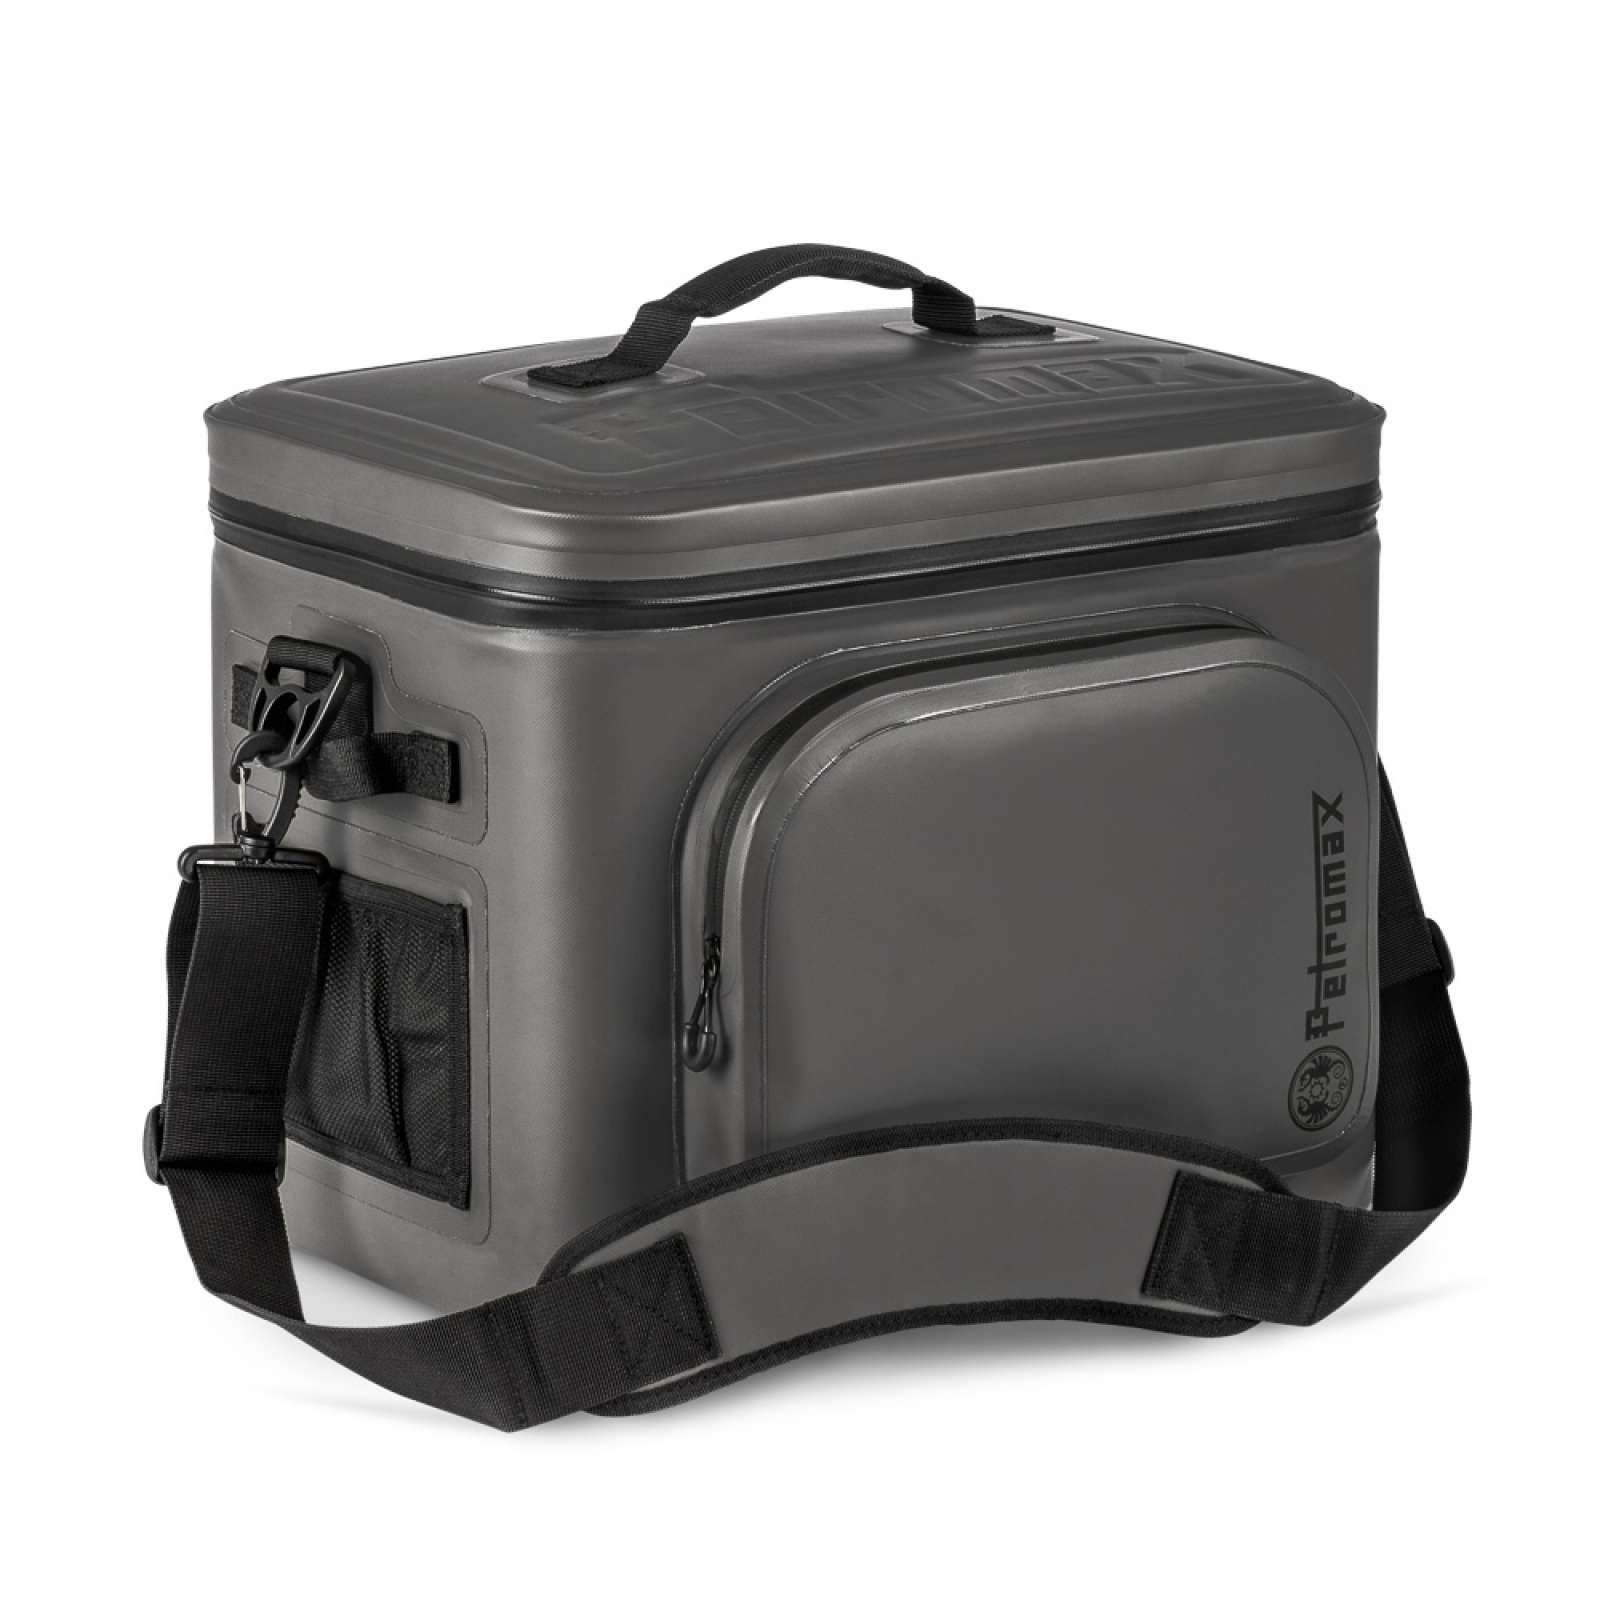 Petromax Kühltasche 22 Liter Dunkelgrau für Camping, Angeln und Picknick / Stromunabhängig